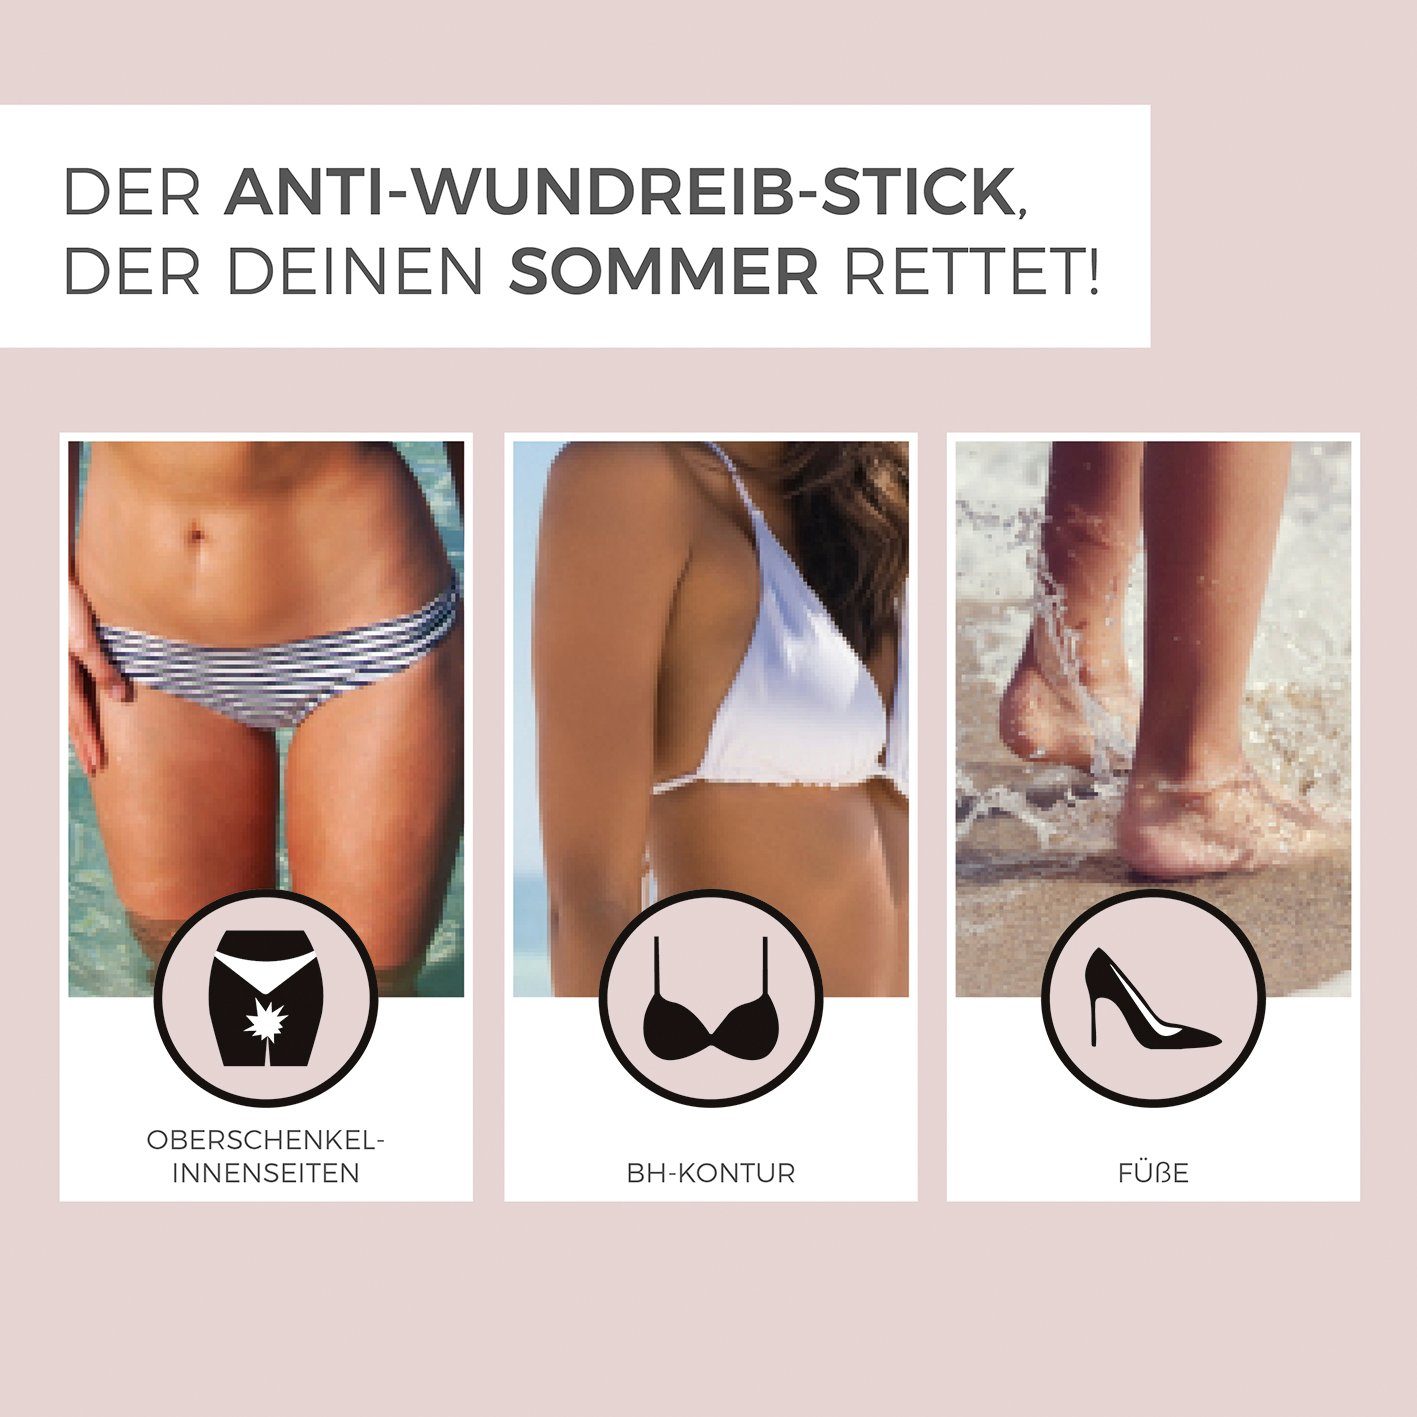 Oberschenkelinnenseiten, getestet Summersaver der 25 Kosmetikum g, Pflegestift Dermatologisch das Anti-Wundreib-Stick Wundreiben Woman gegen